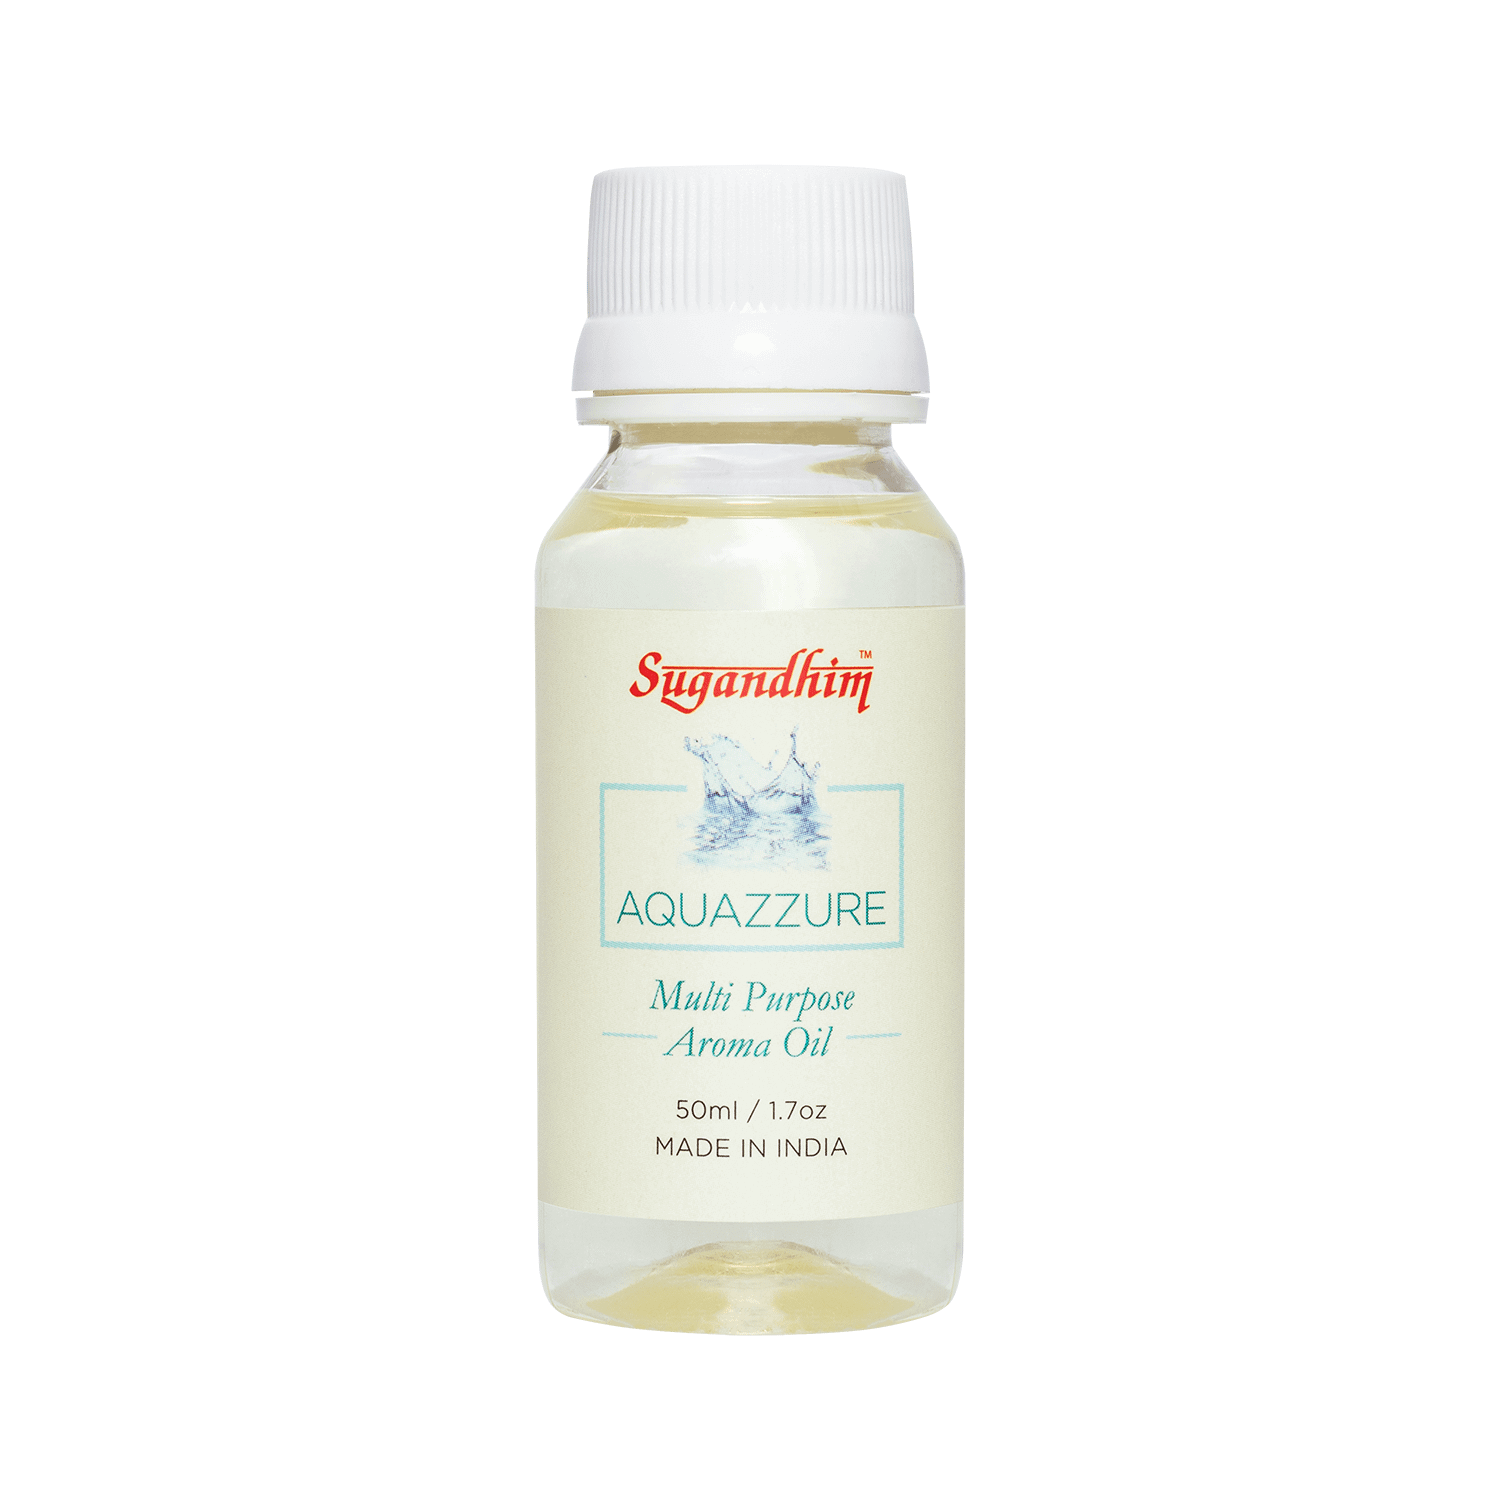 Aquazzure Multi-Purpose Aroma Oil